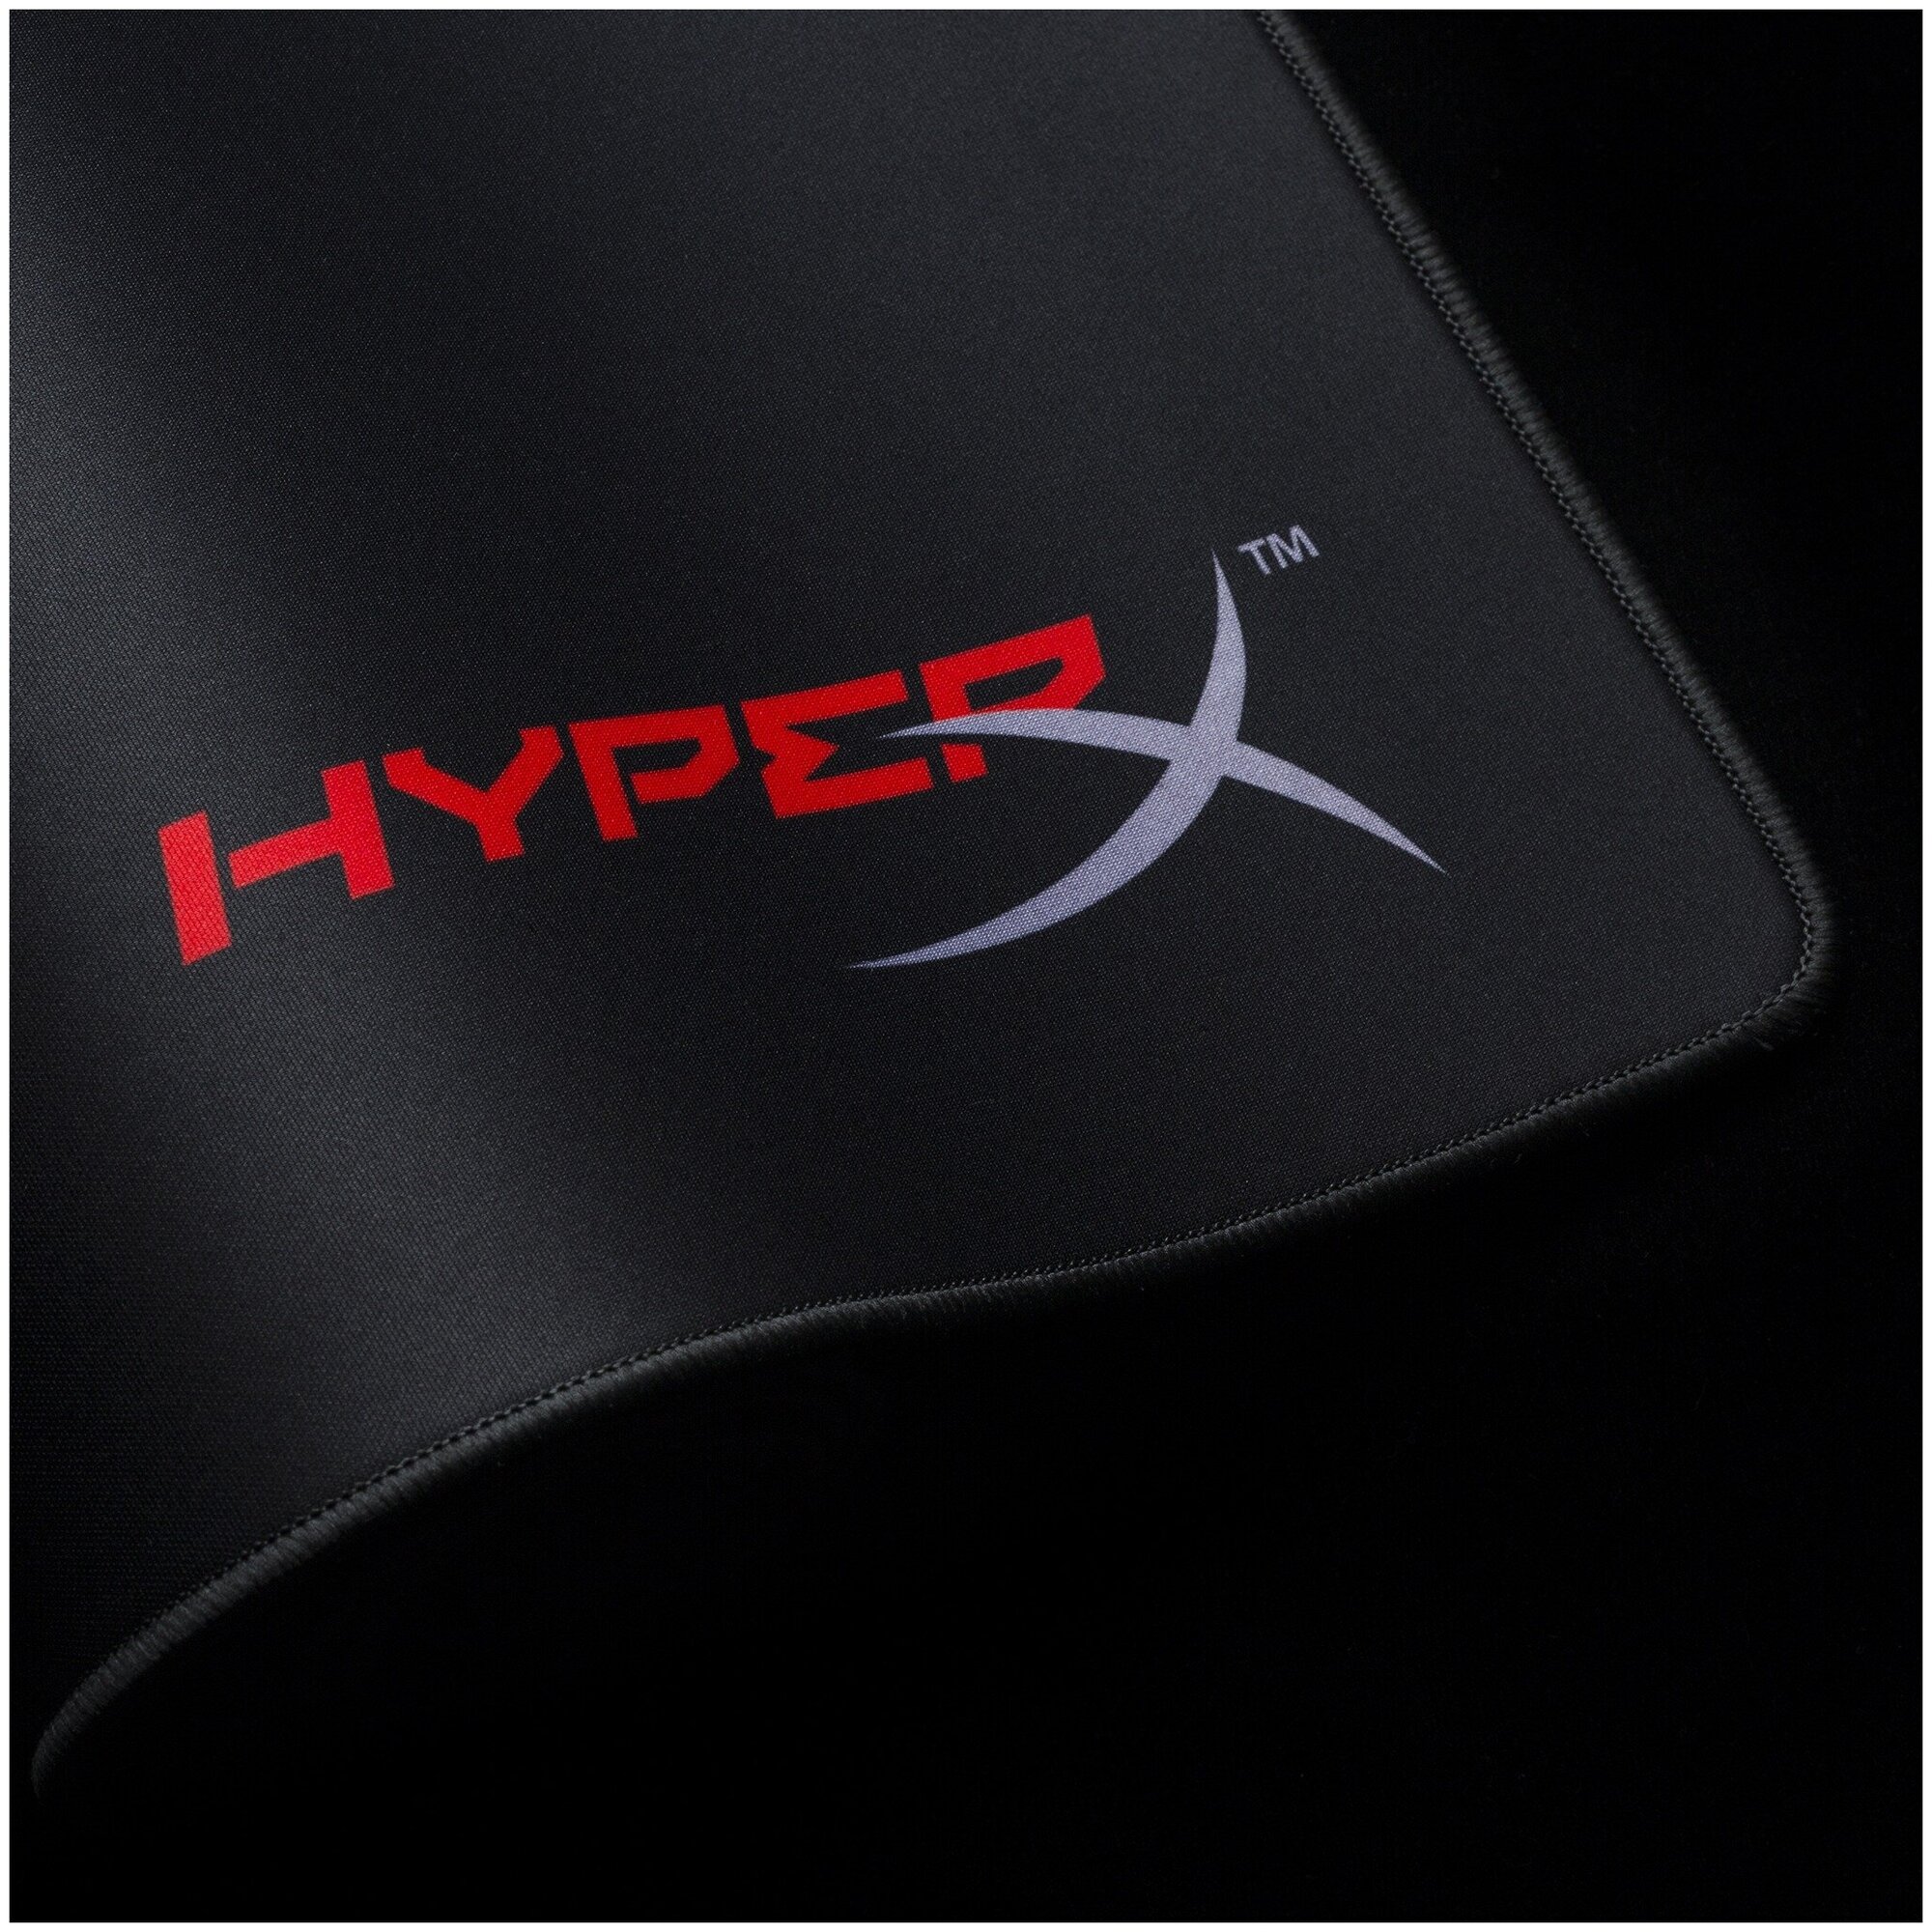 Коврик Kingston HyperX FURY S Pro M, черный